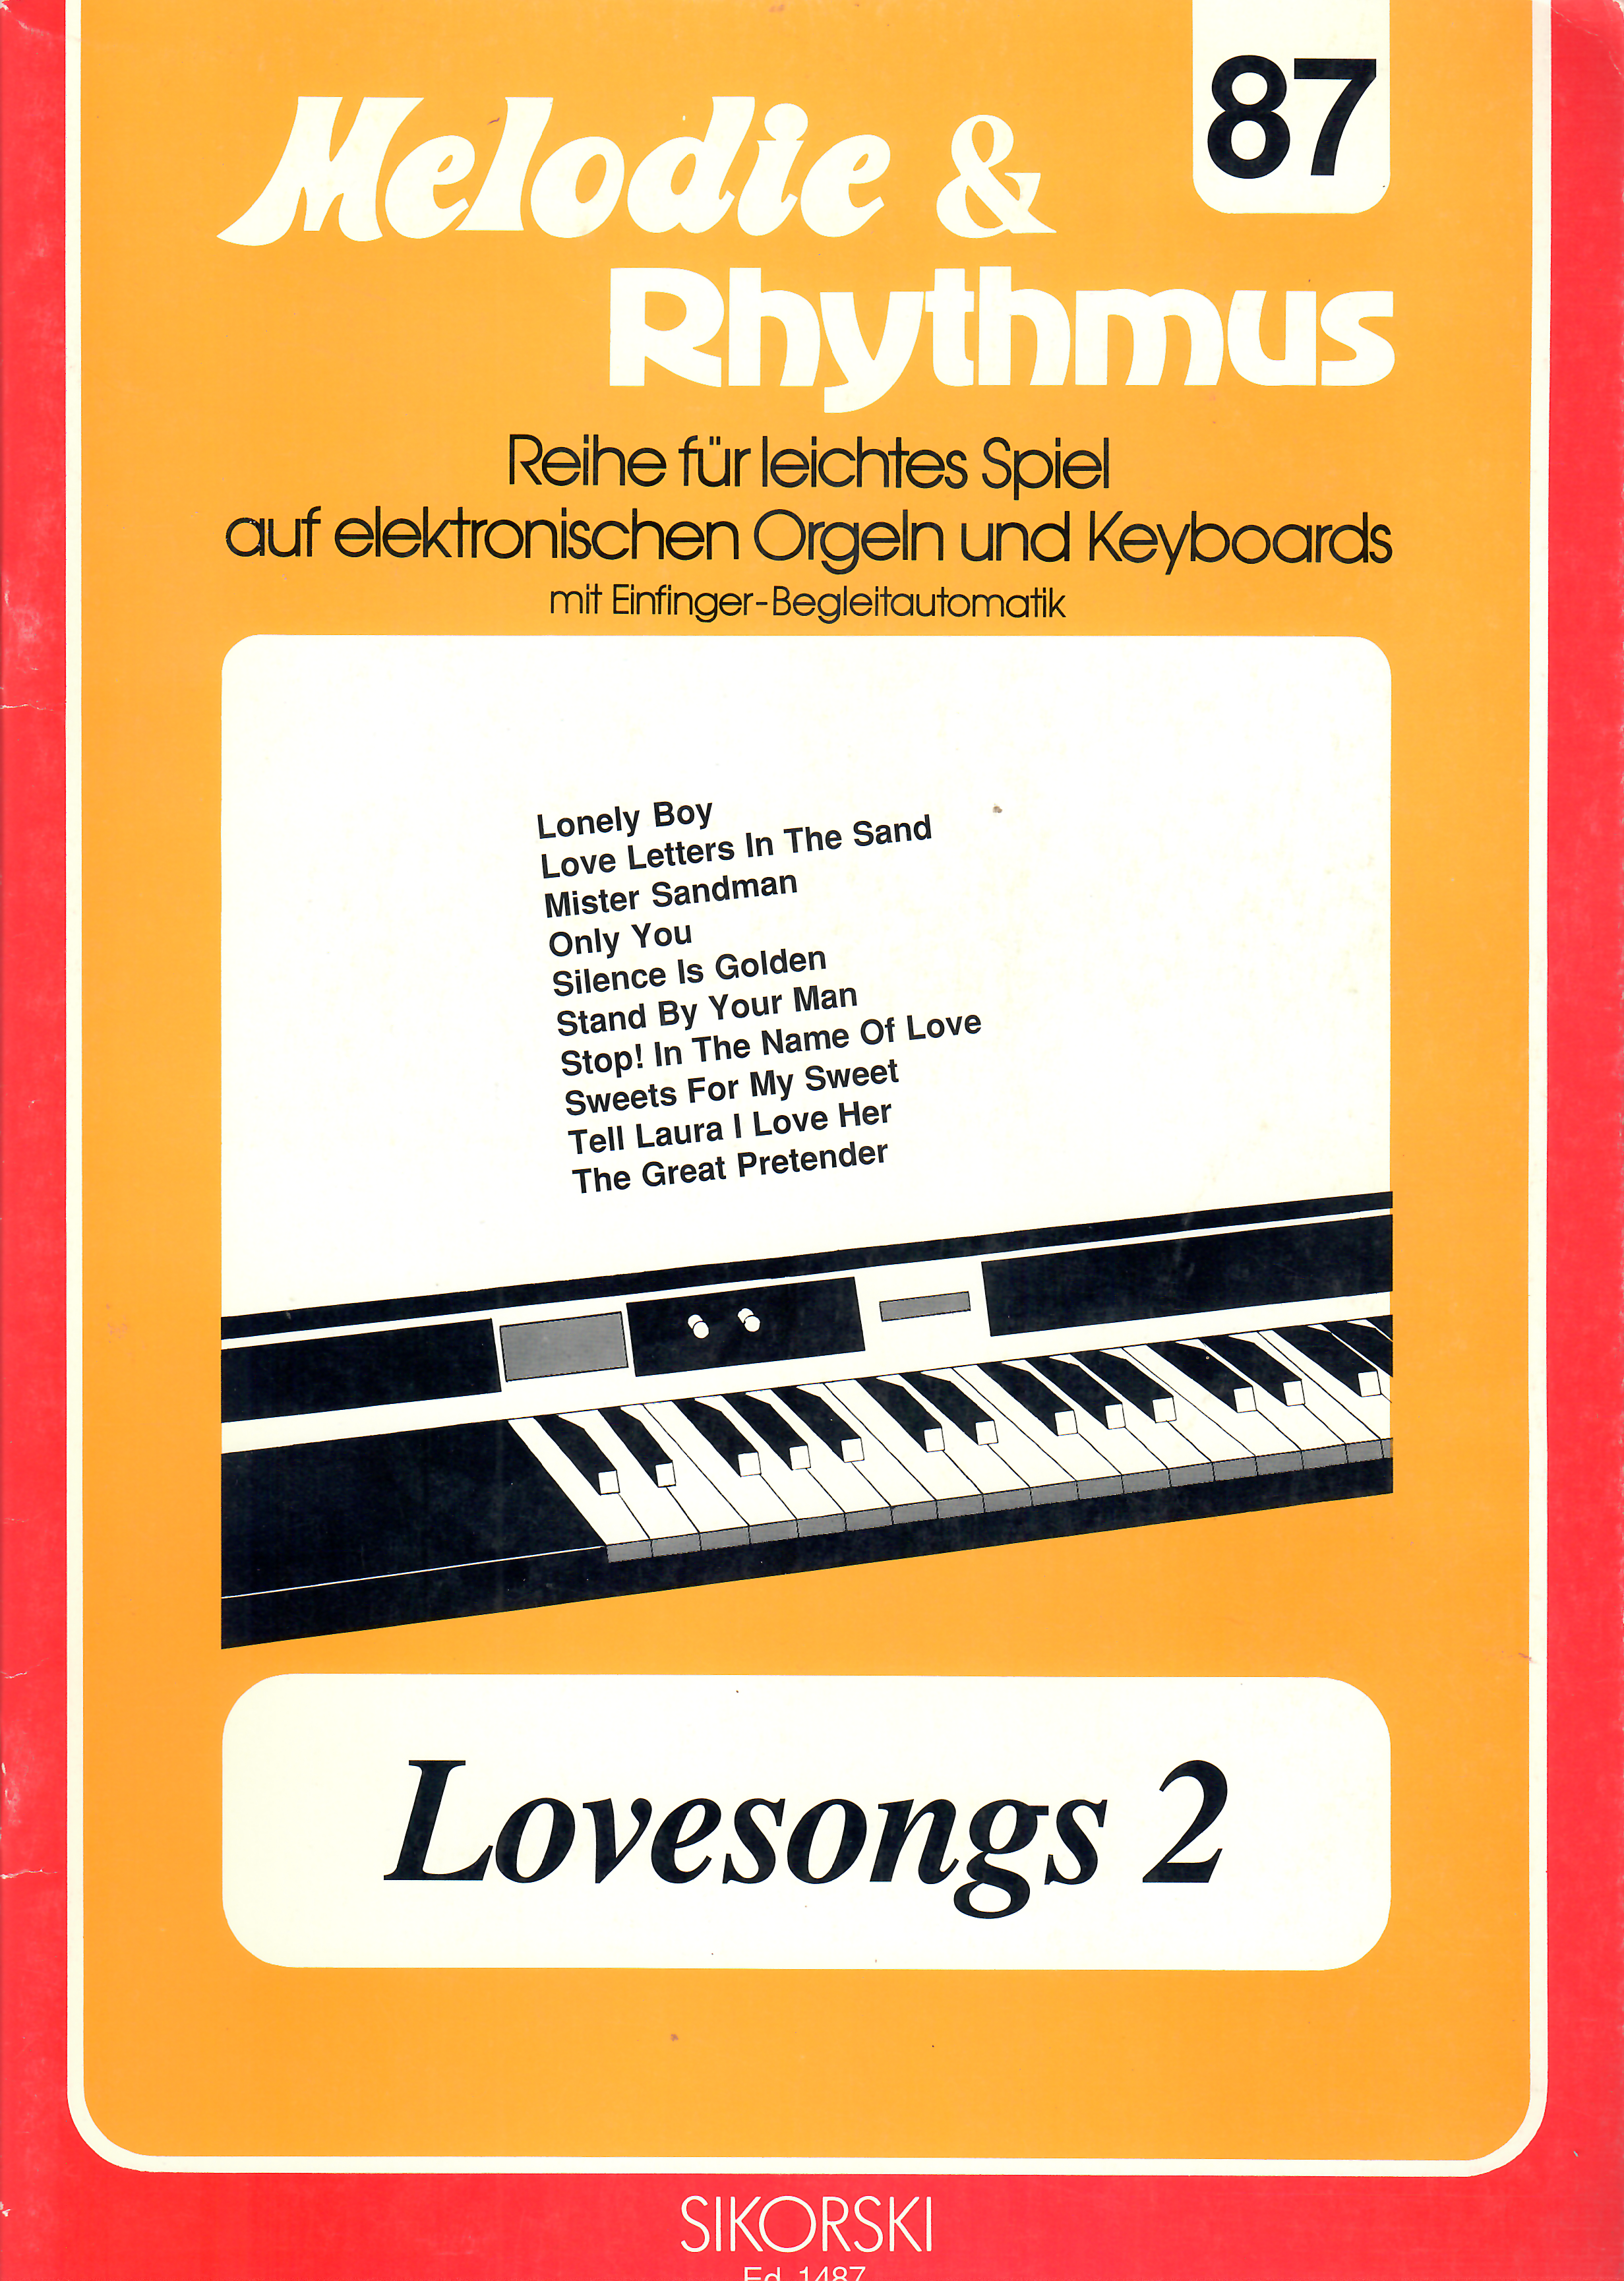 Melodie & Rhythmus Bd. 87 - Lovesongs 2